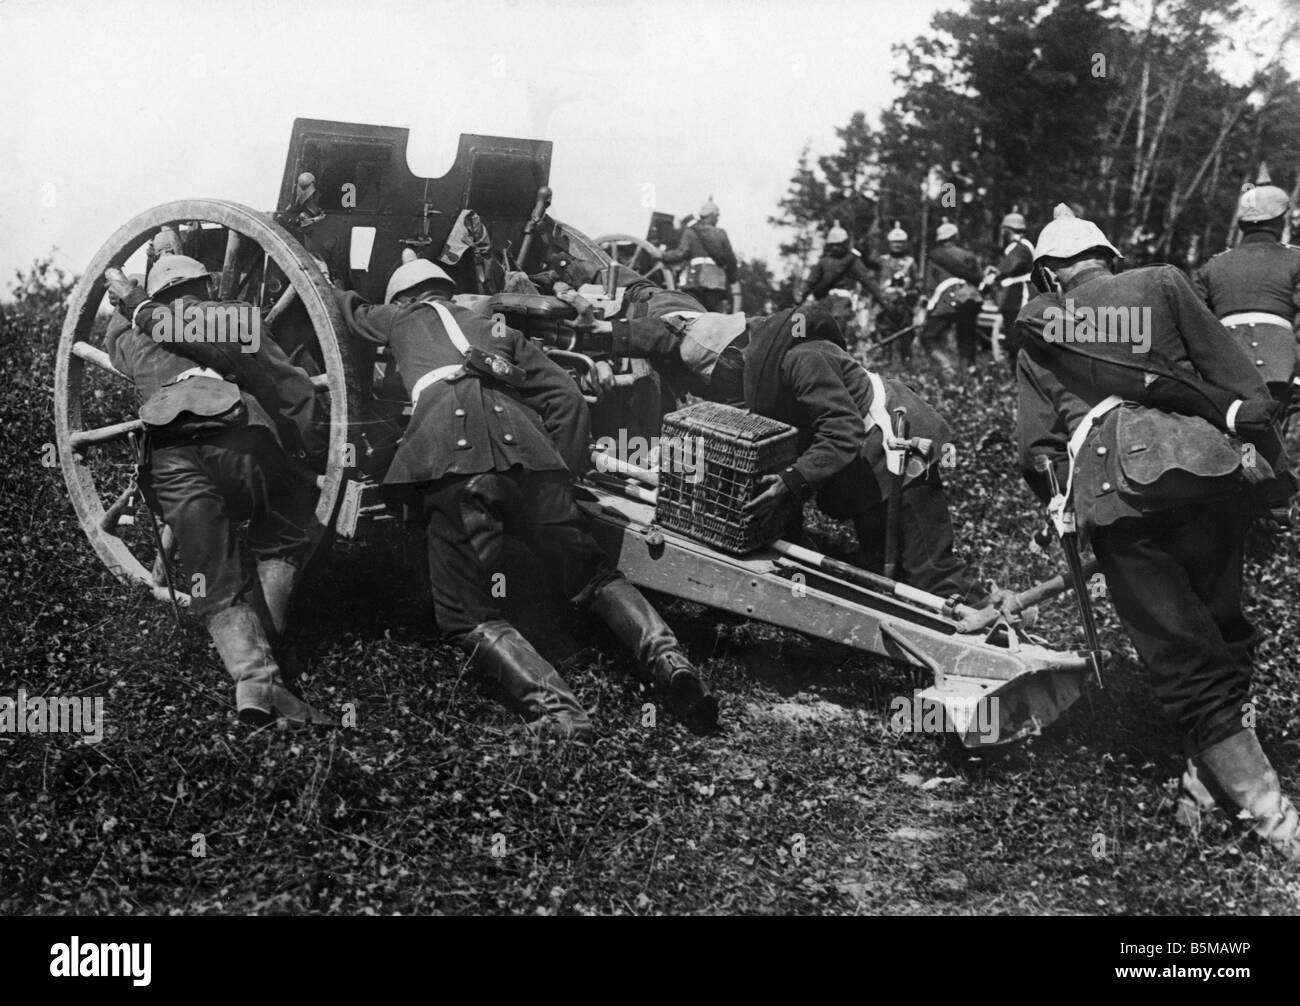 2 M65 F1 1913 Artiglieria di battaglia Foto posizione militare campo armi obice cadauno di artiglieria è portato in battaglia posi Foto Stock